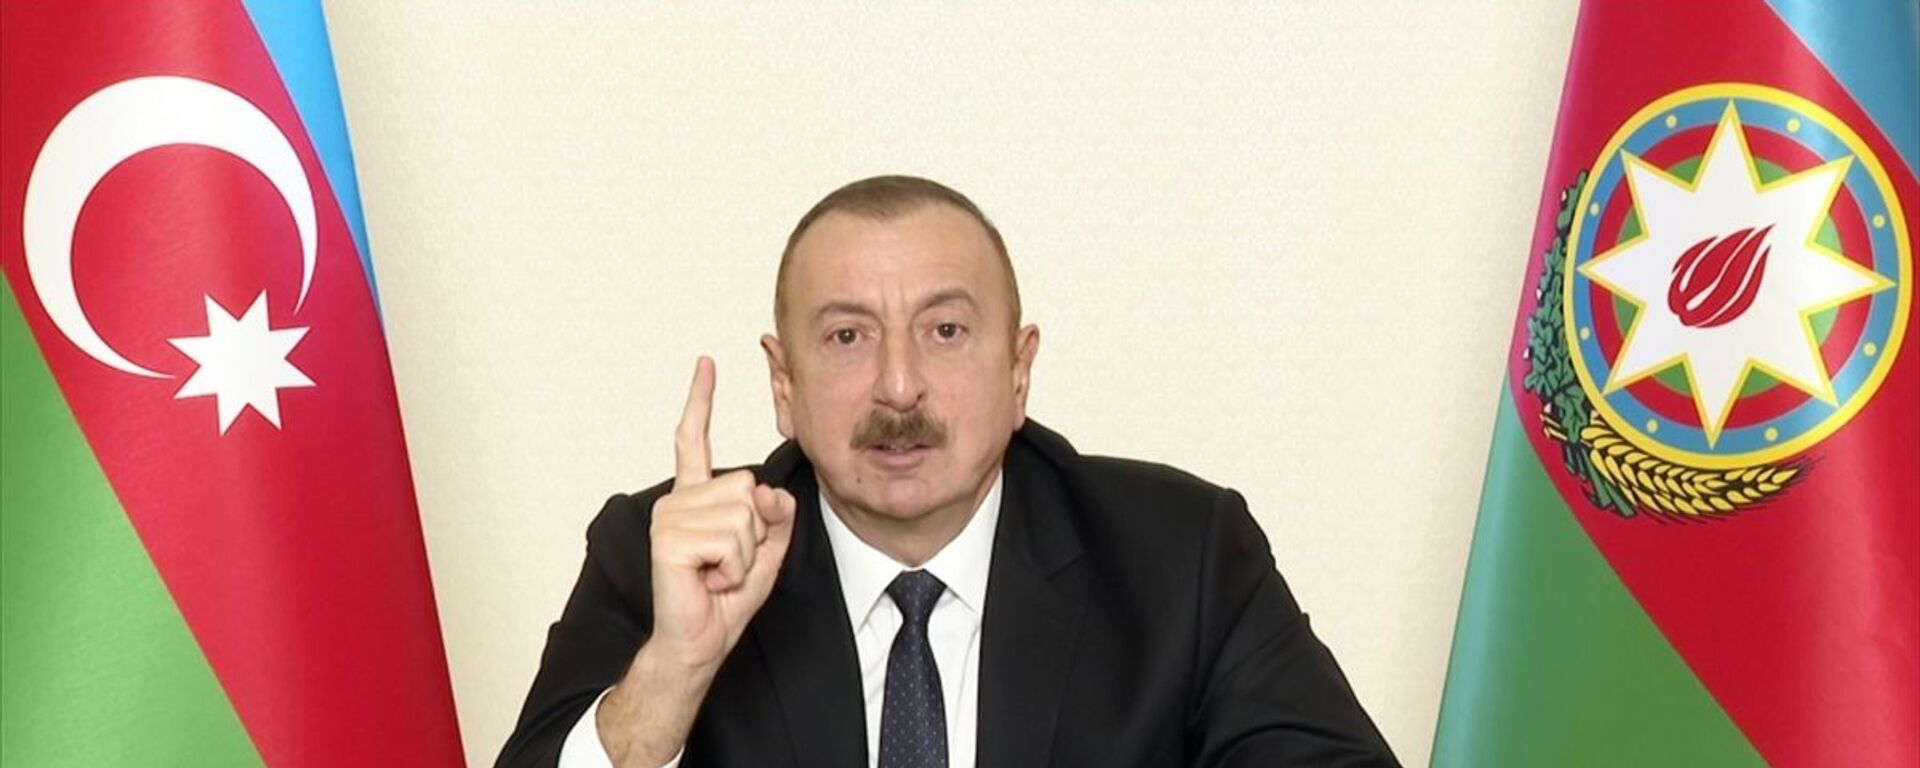 İlham Aliyev - Sputnik Türkiye, 1920, 26.02.2021